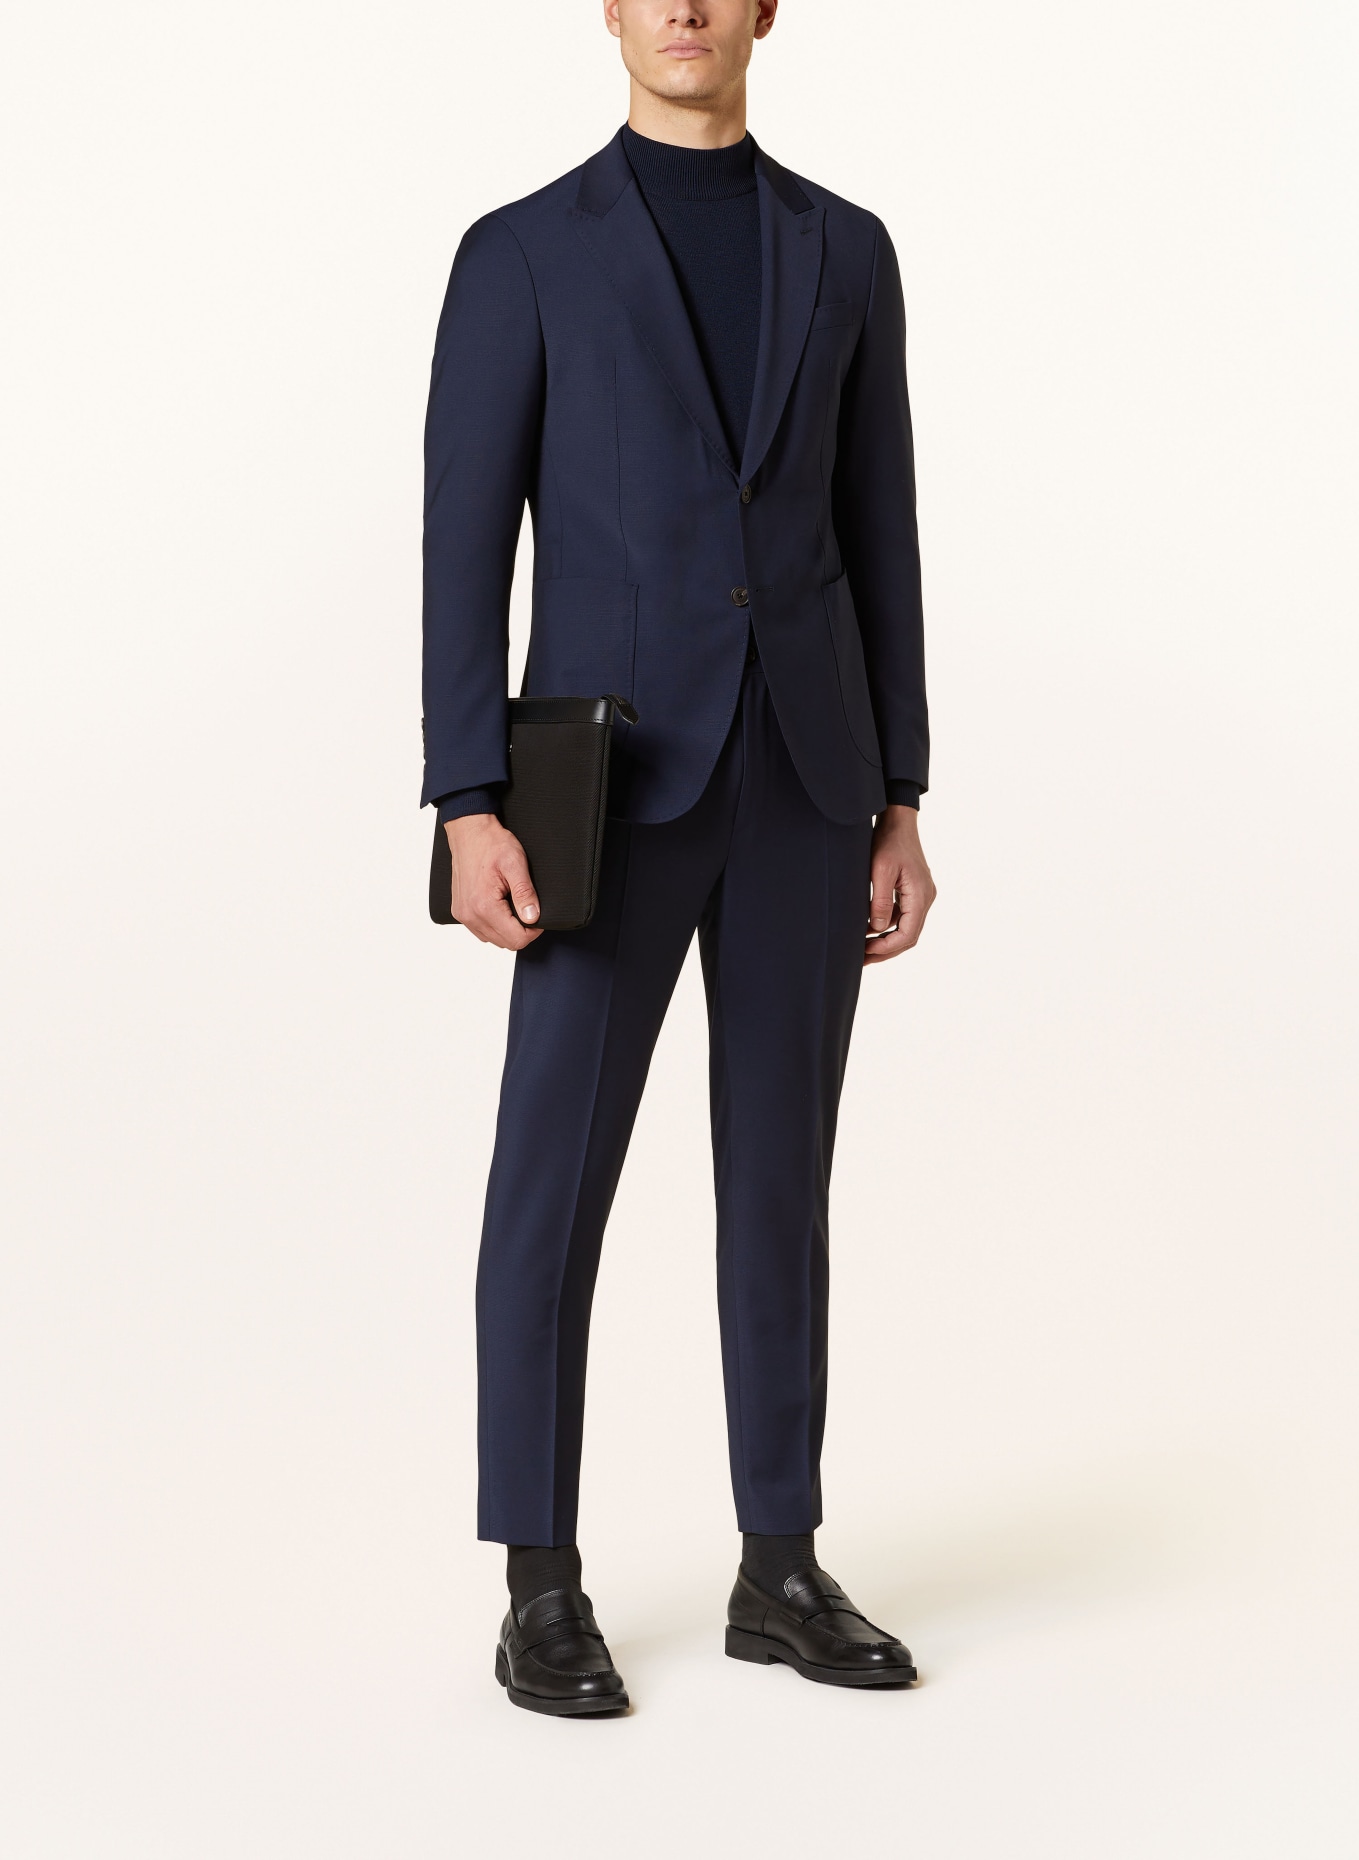 JOOP! Anzughose BAXX Slim Fit, Farbe: 401 Dark Blue                  401 (Bild 2)